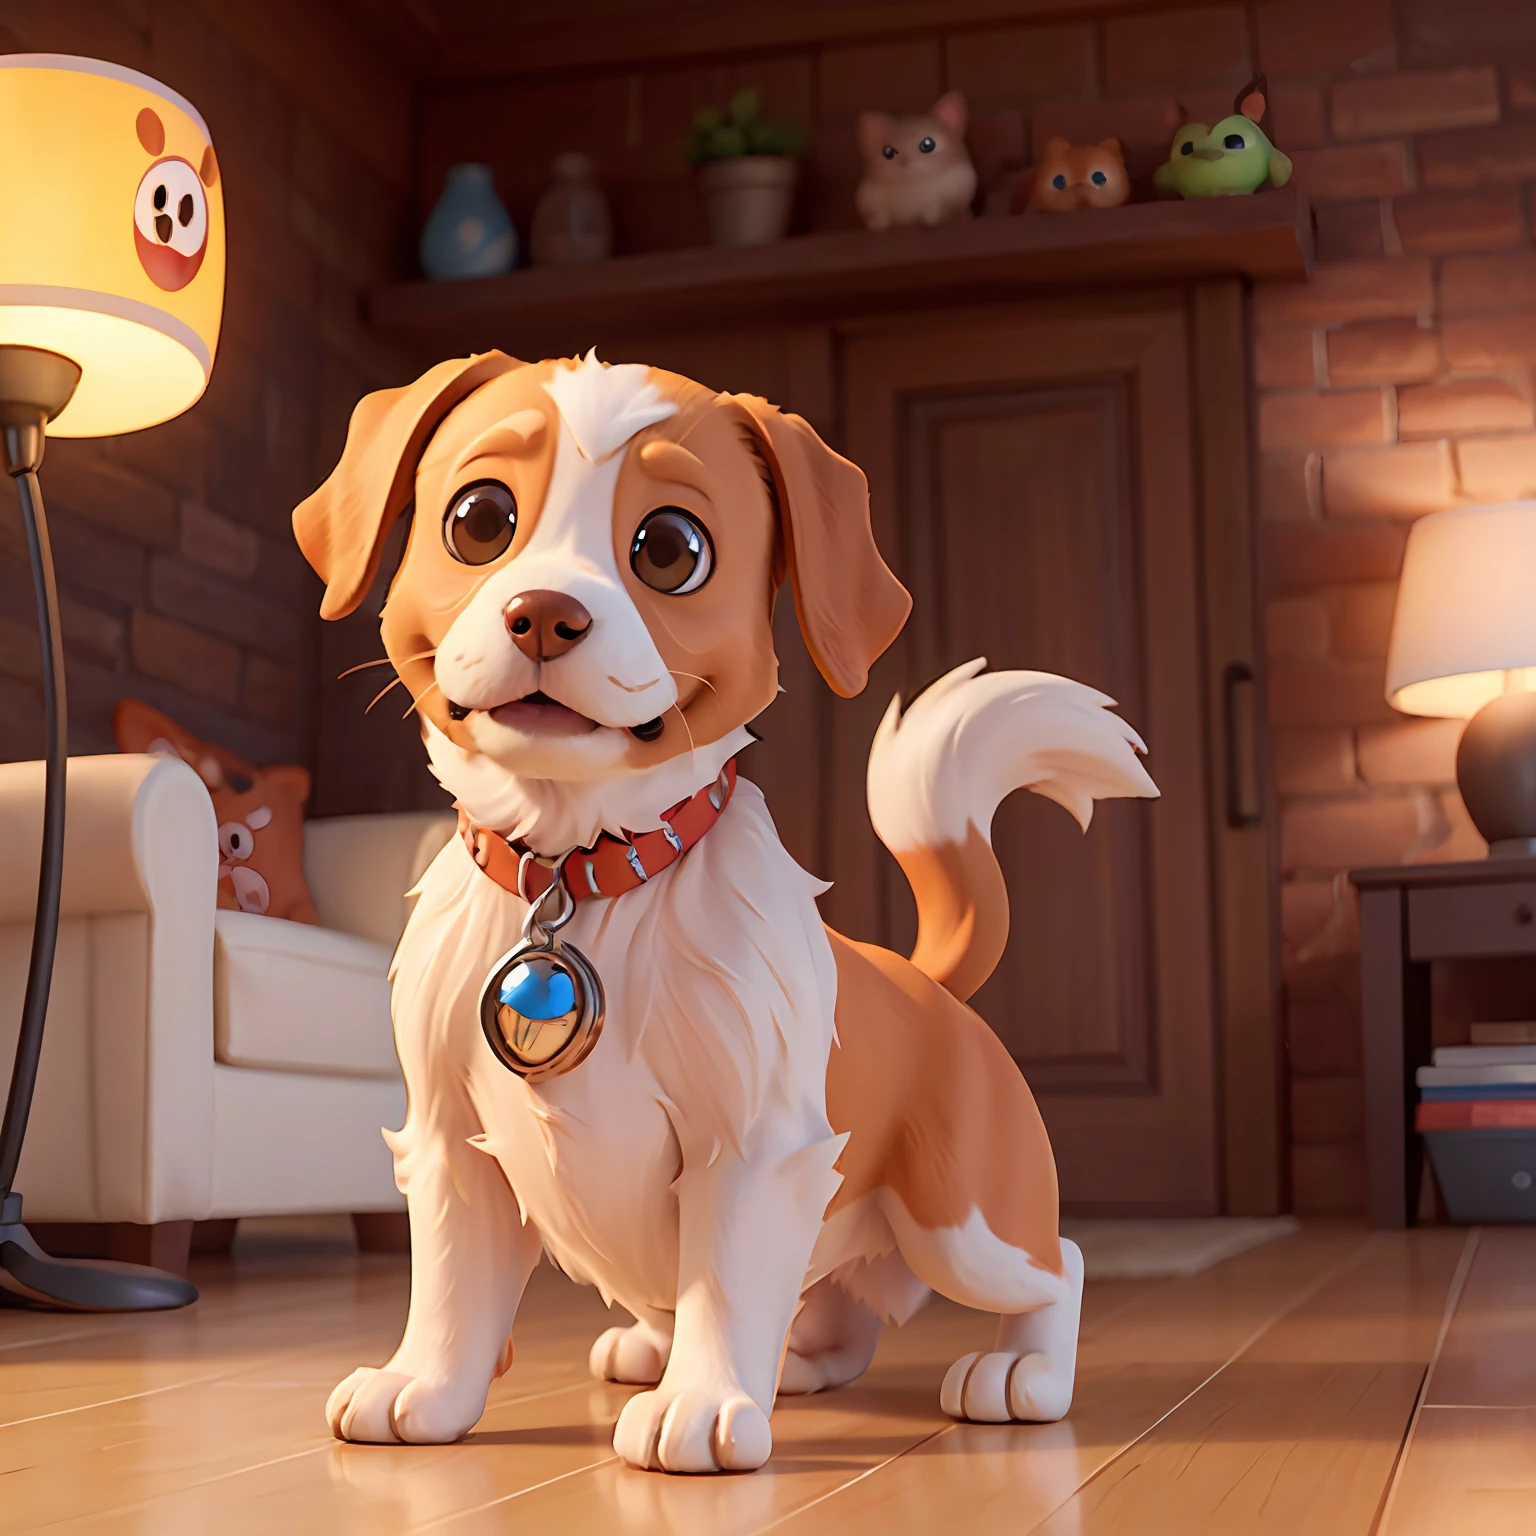 очаровательная милая собачка в стиле Pixar, стиль Диснея, Пиксар анимация, дизайн персонажа, рендермен, уютное освещение